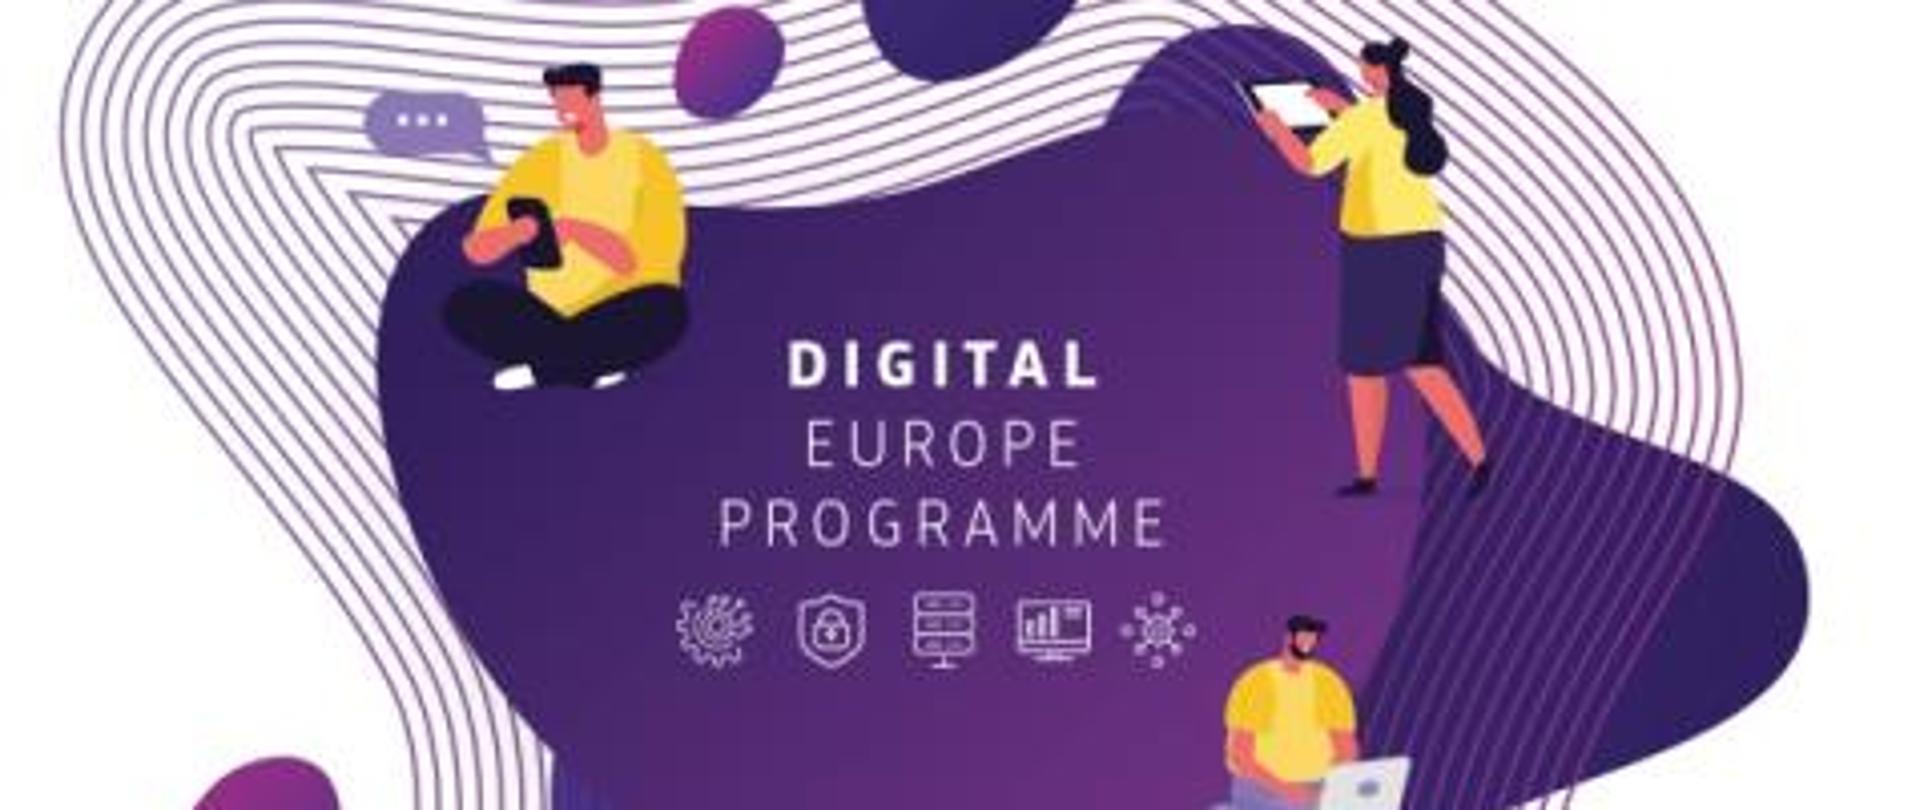 Logo Digital Europe Programme, 3 ikony ludzi pracujących na laptopie, tablecie i telefonie